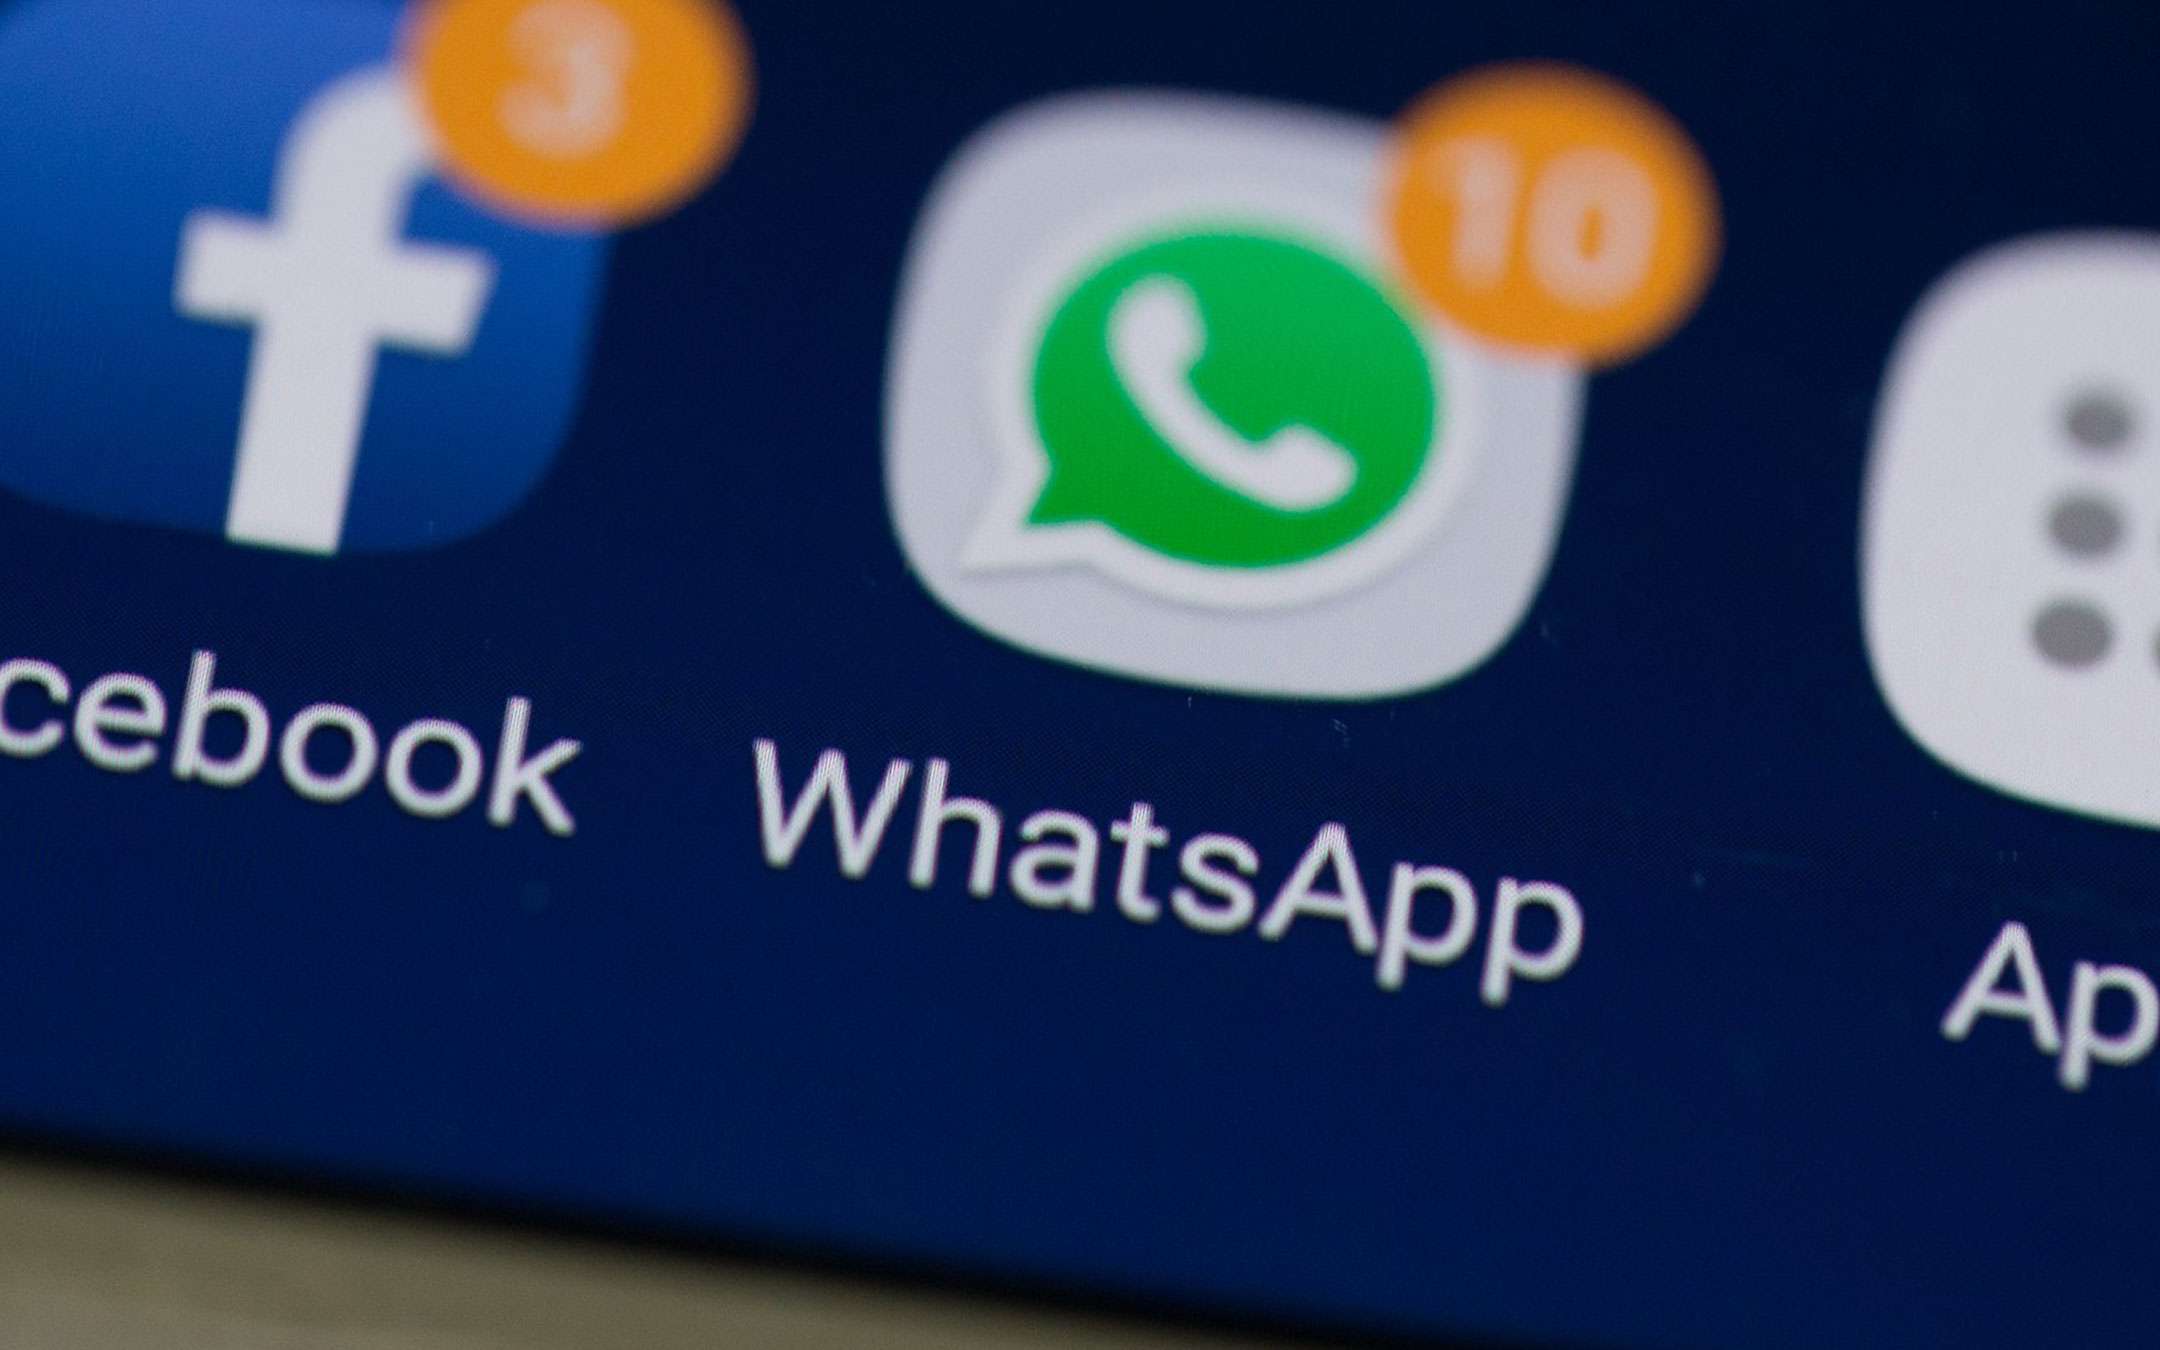 WhatsApp down: servizio inaccessibile, cosa succede